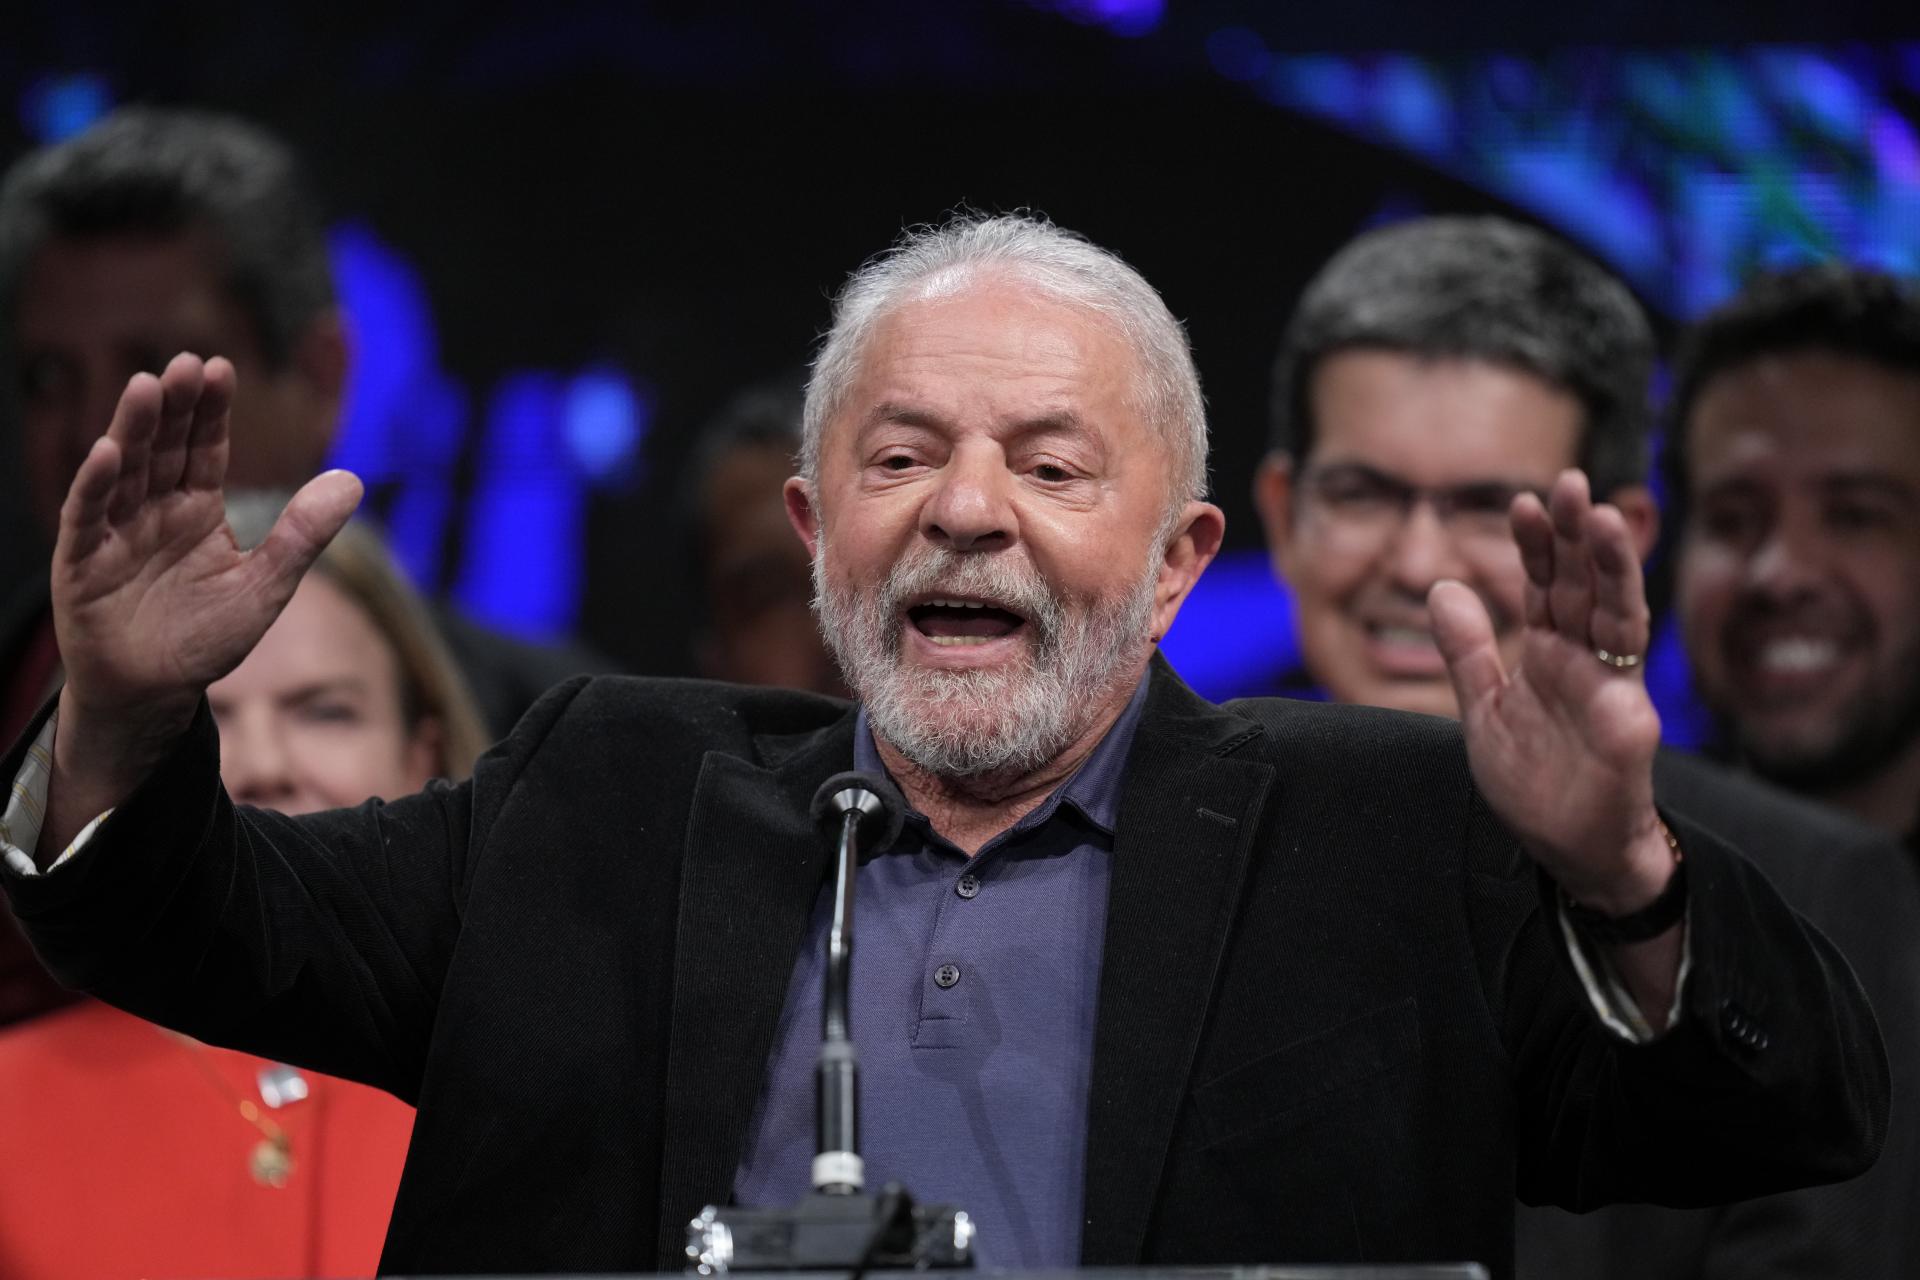 Brazília bude mať aj druhé kolo prezidentských volieb. Stretnú sa v ňom Lula da Silva a Bolsonaro